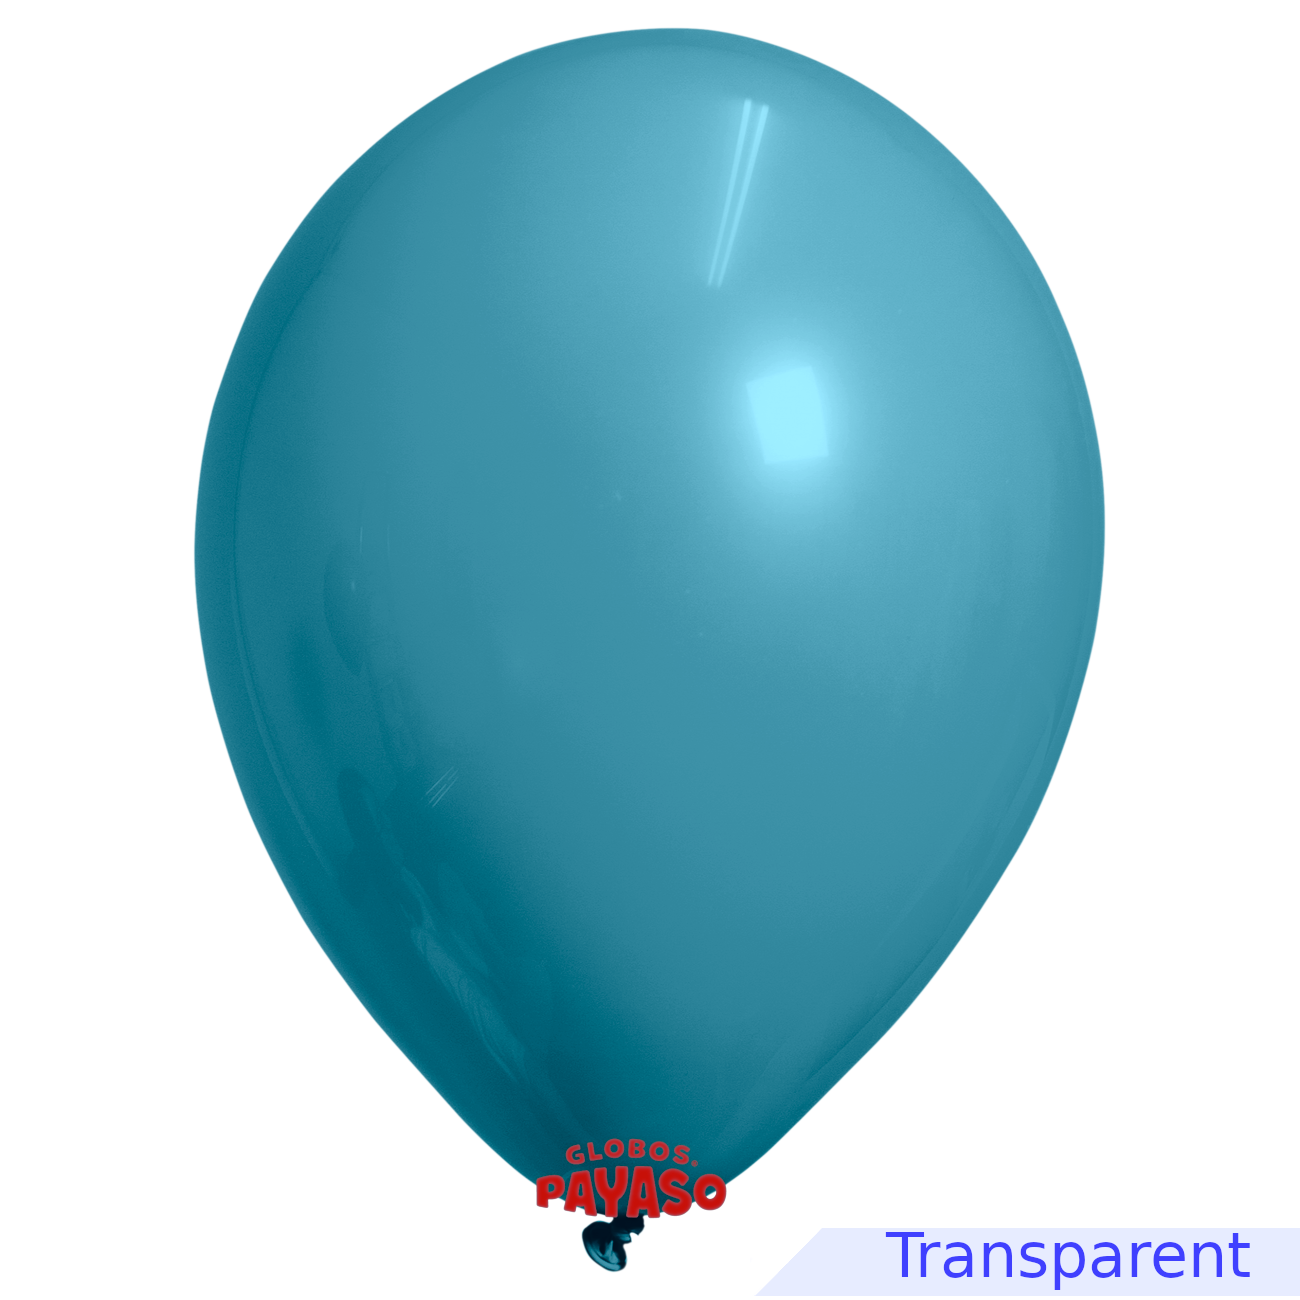 Globos Payaso / Unique 5" Aquamarine Translucid Decorator Balloon